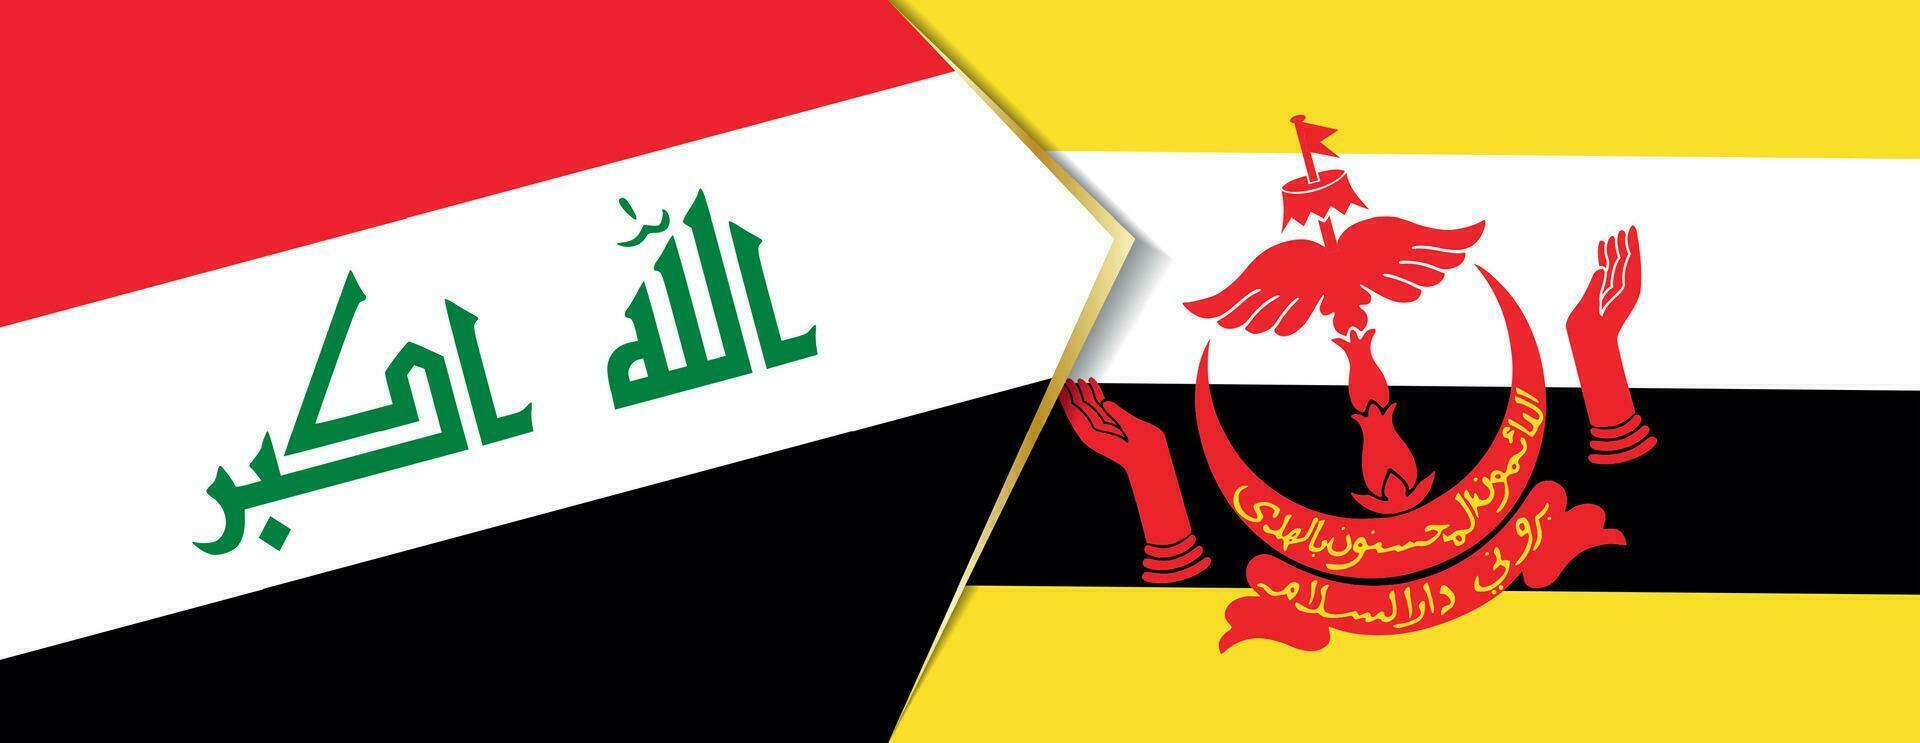 Iraque e brunei bandeiras, dois vetor bandeiras.